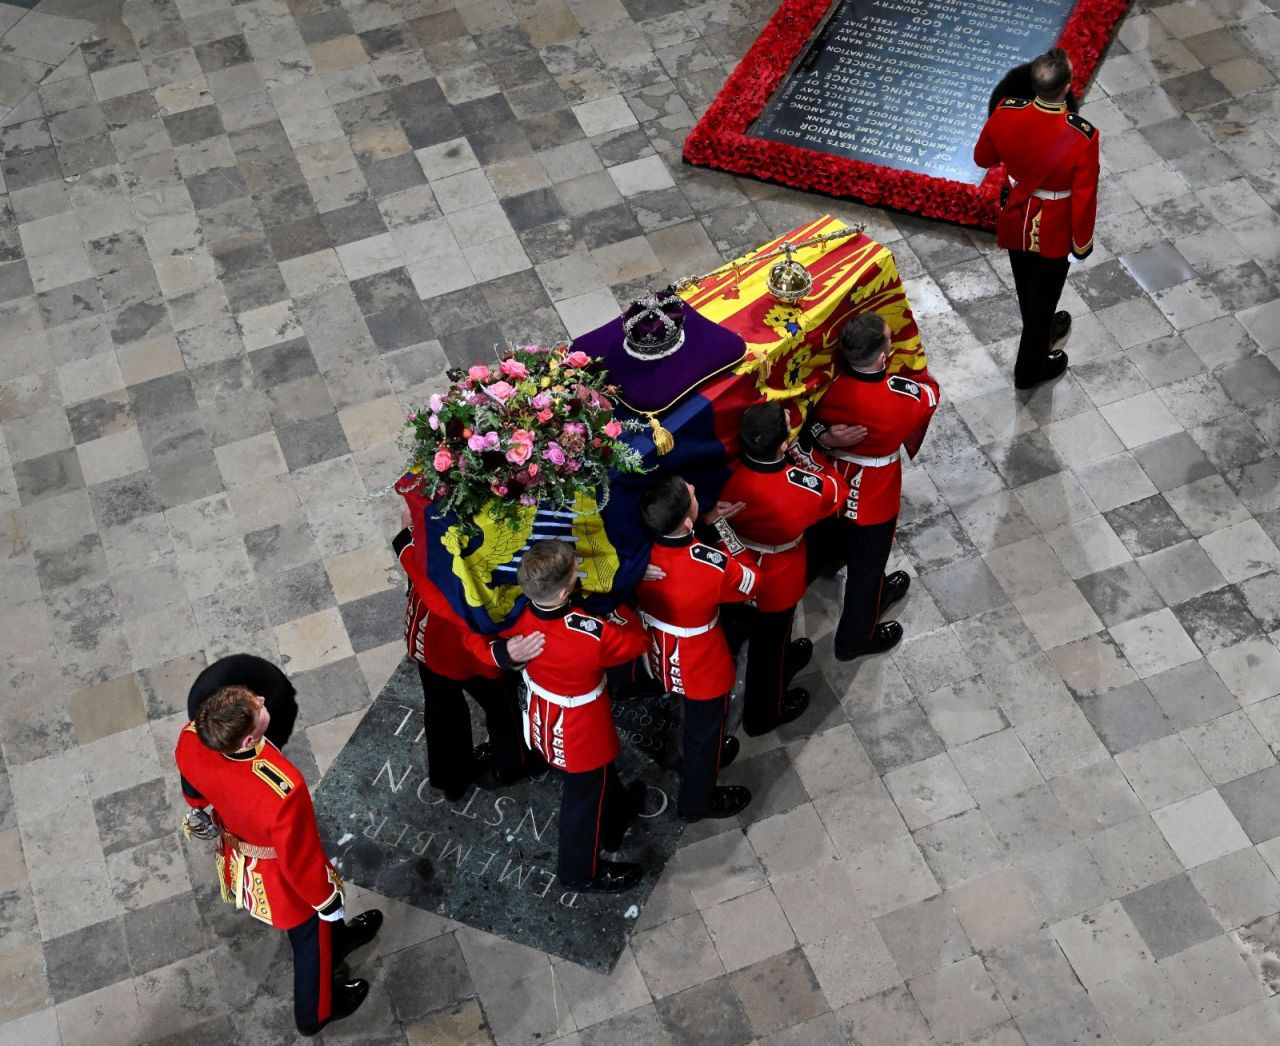 Kraliçe'nin naaşı cenaze töreni için Westminster Abbey'e getirildi - Sayfa 1